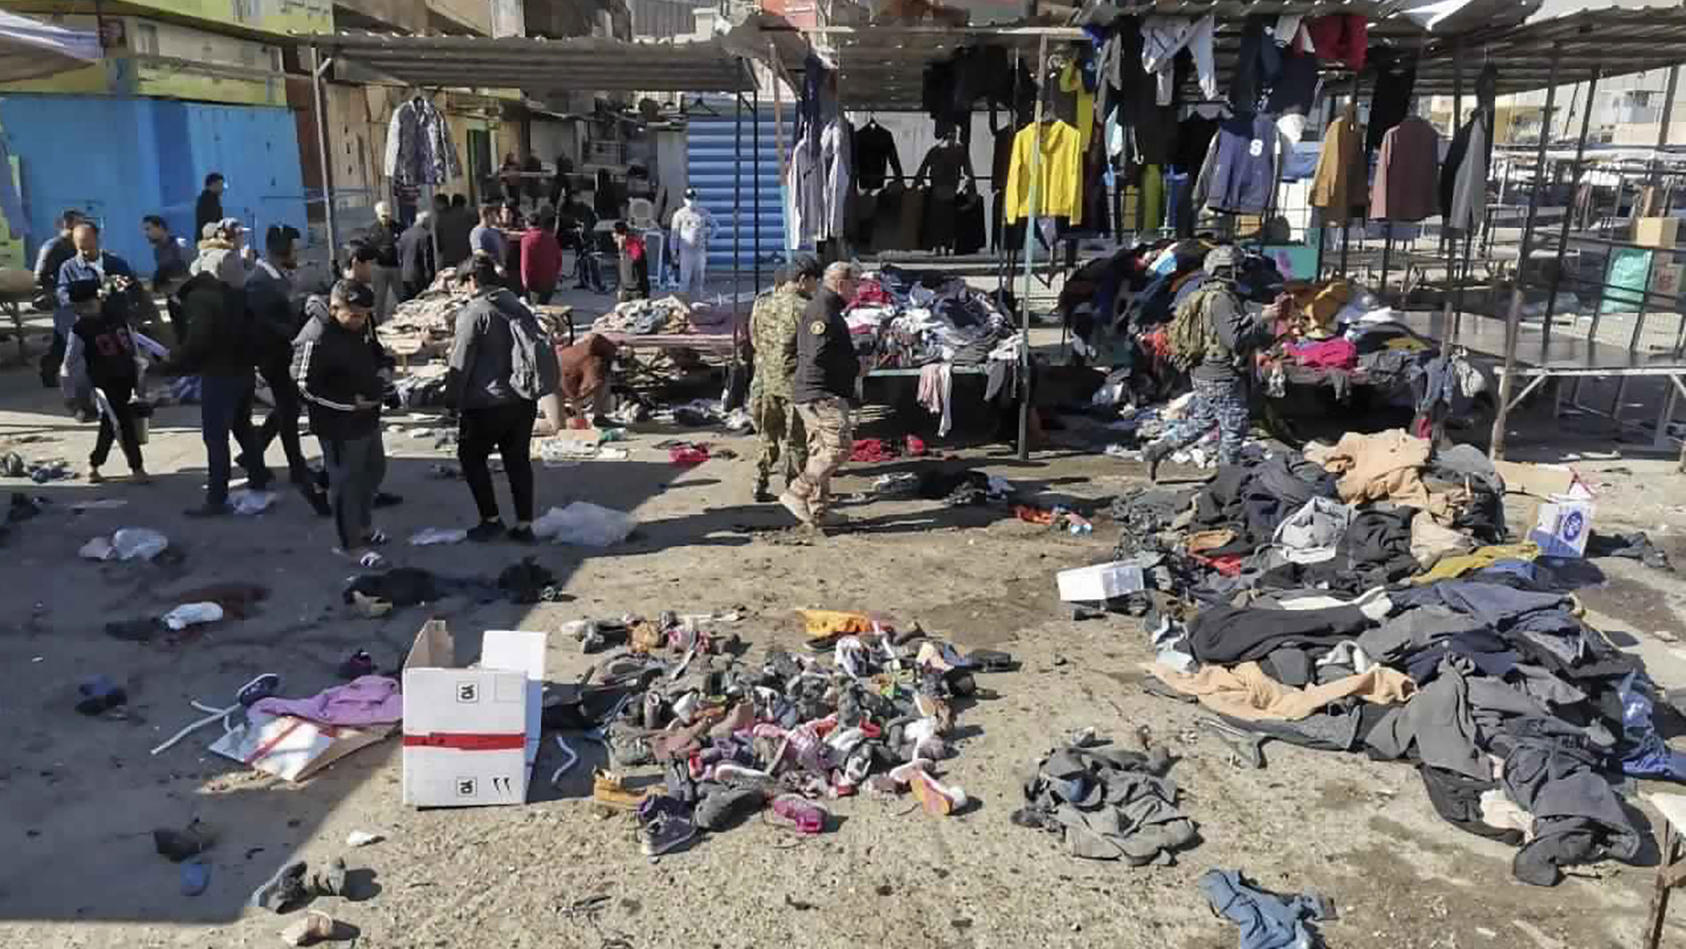 21.01.2021, Irak, Bagdad: Menschen und Sicherheitskräfte gehen in der irakischen Hauptstadt am Ort eines tödlichen Anschlags, einem Markt, auf dem gebrauchte Kleidung verkauft wurde, an auf dem Boden verstreuten Kleidung und Schuhen vorbei. Bei zwei 